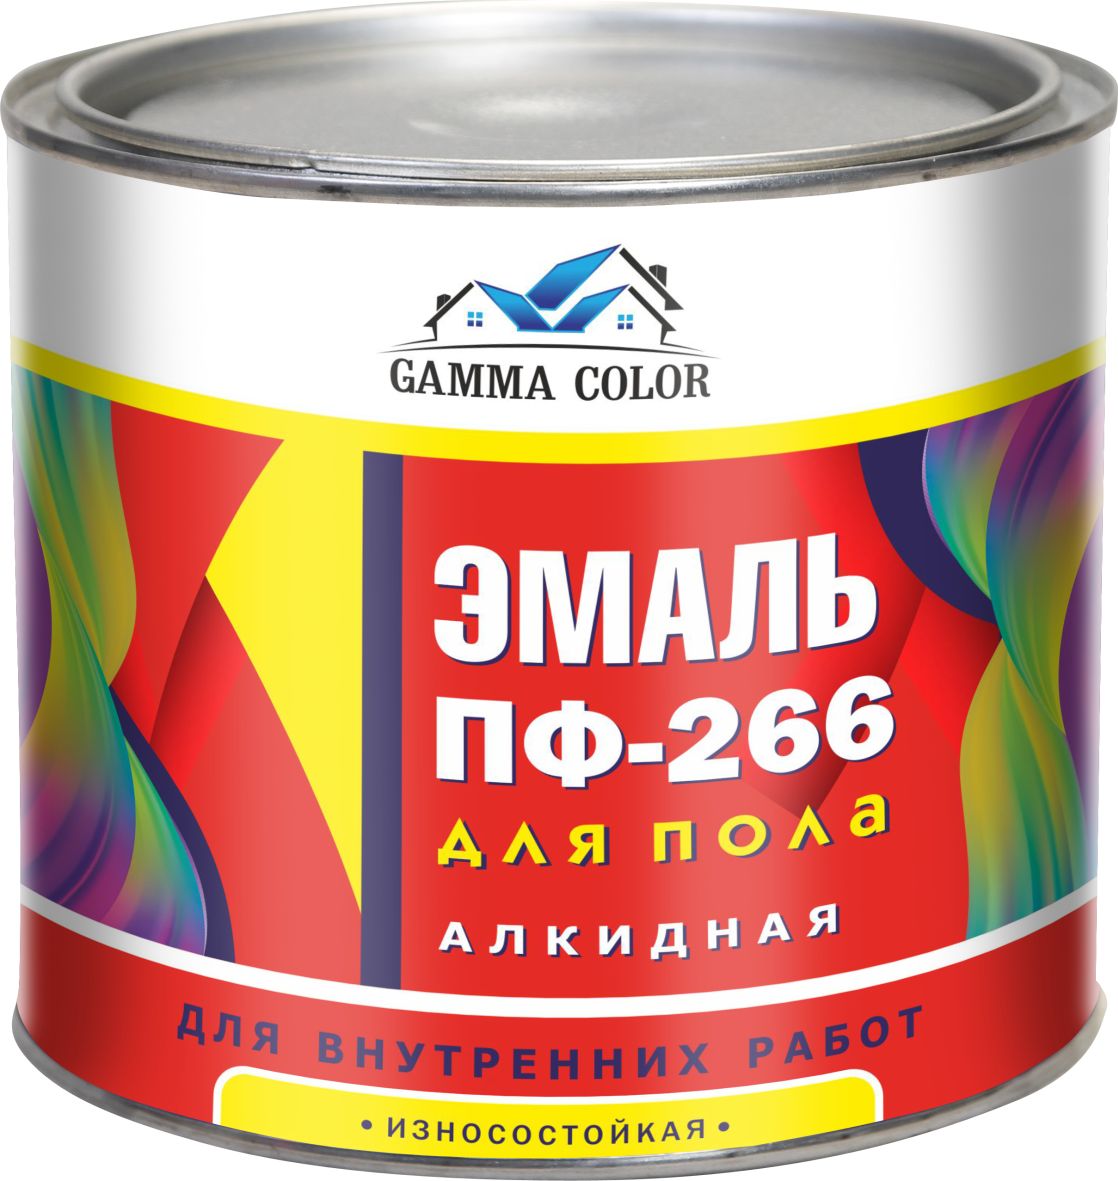 Эмаль для пола ПФ-266 Gamma Color золотисто-коричневая 1,8кг